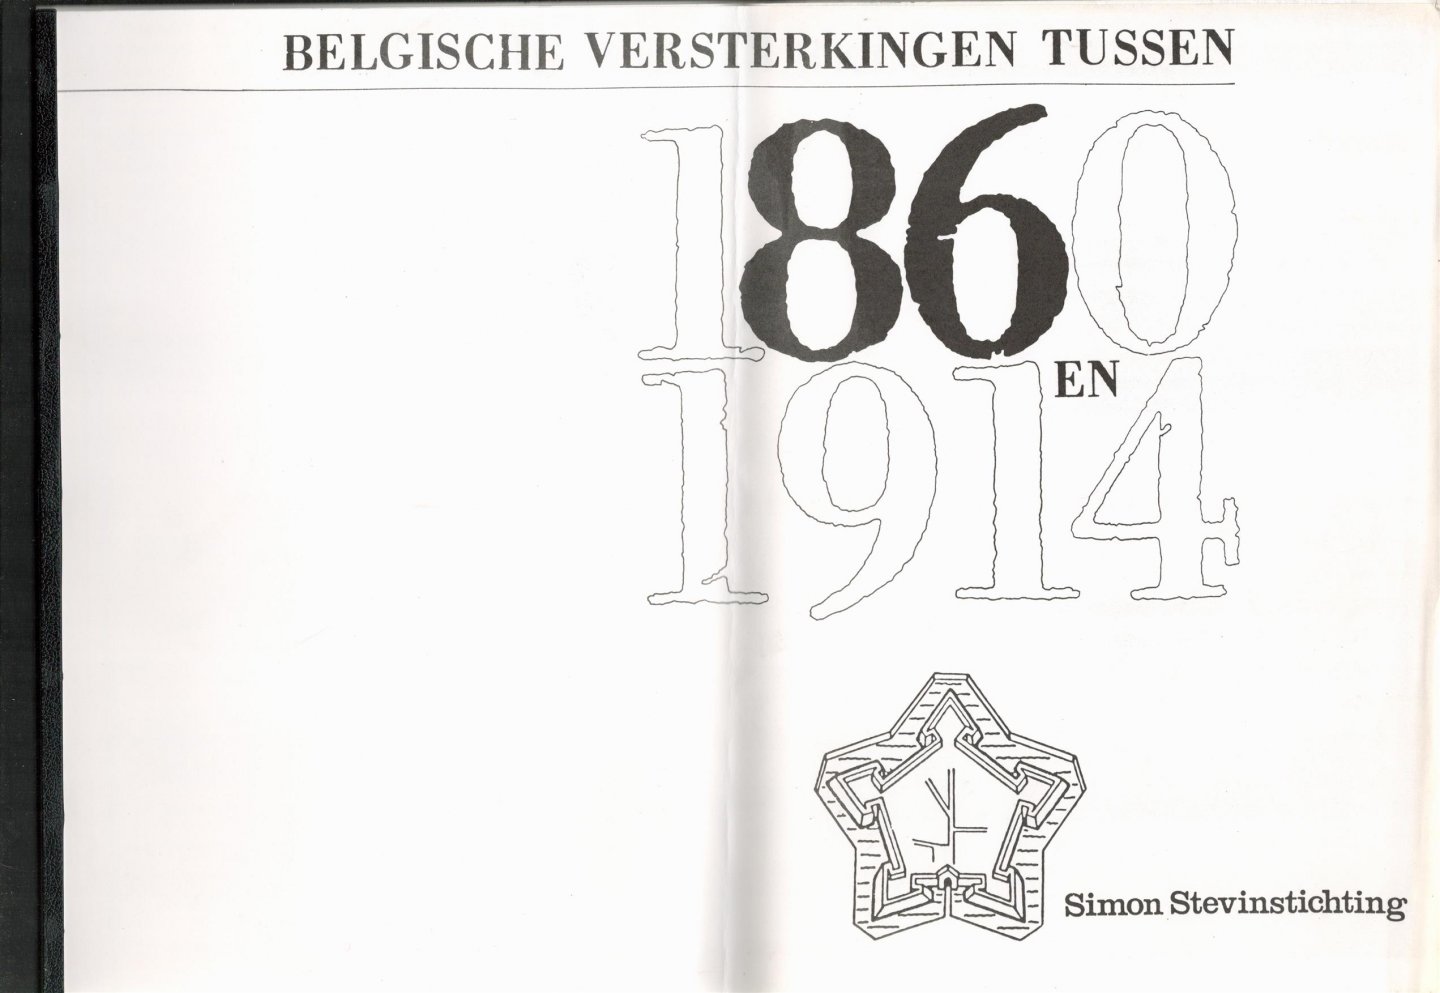 Simon Stevinstichting (Organization) - Belgische versterkingen tussen 1860 en 1914.